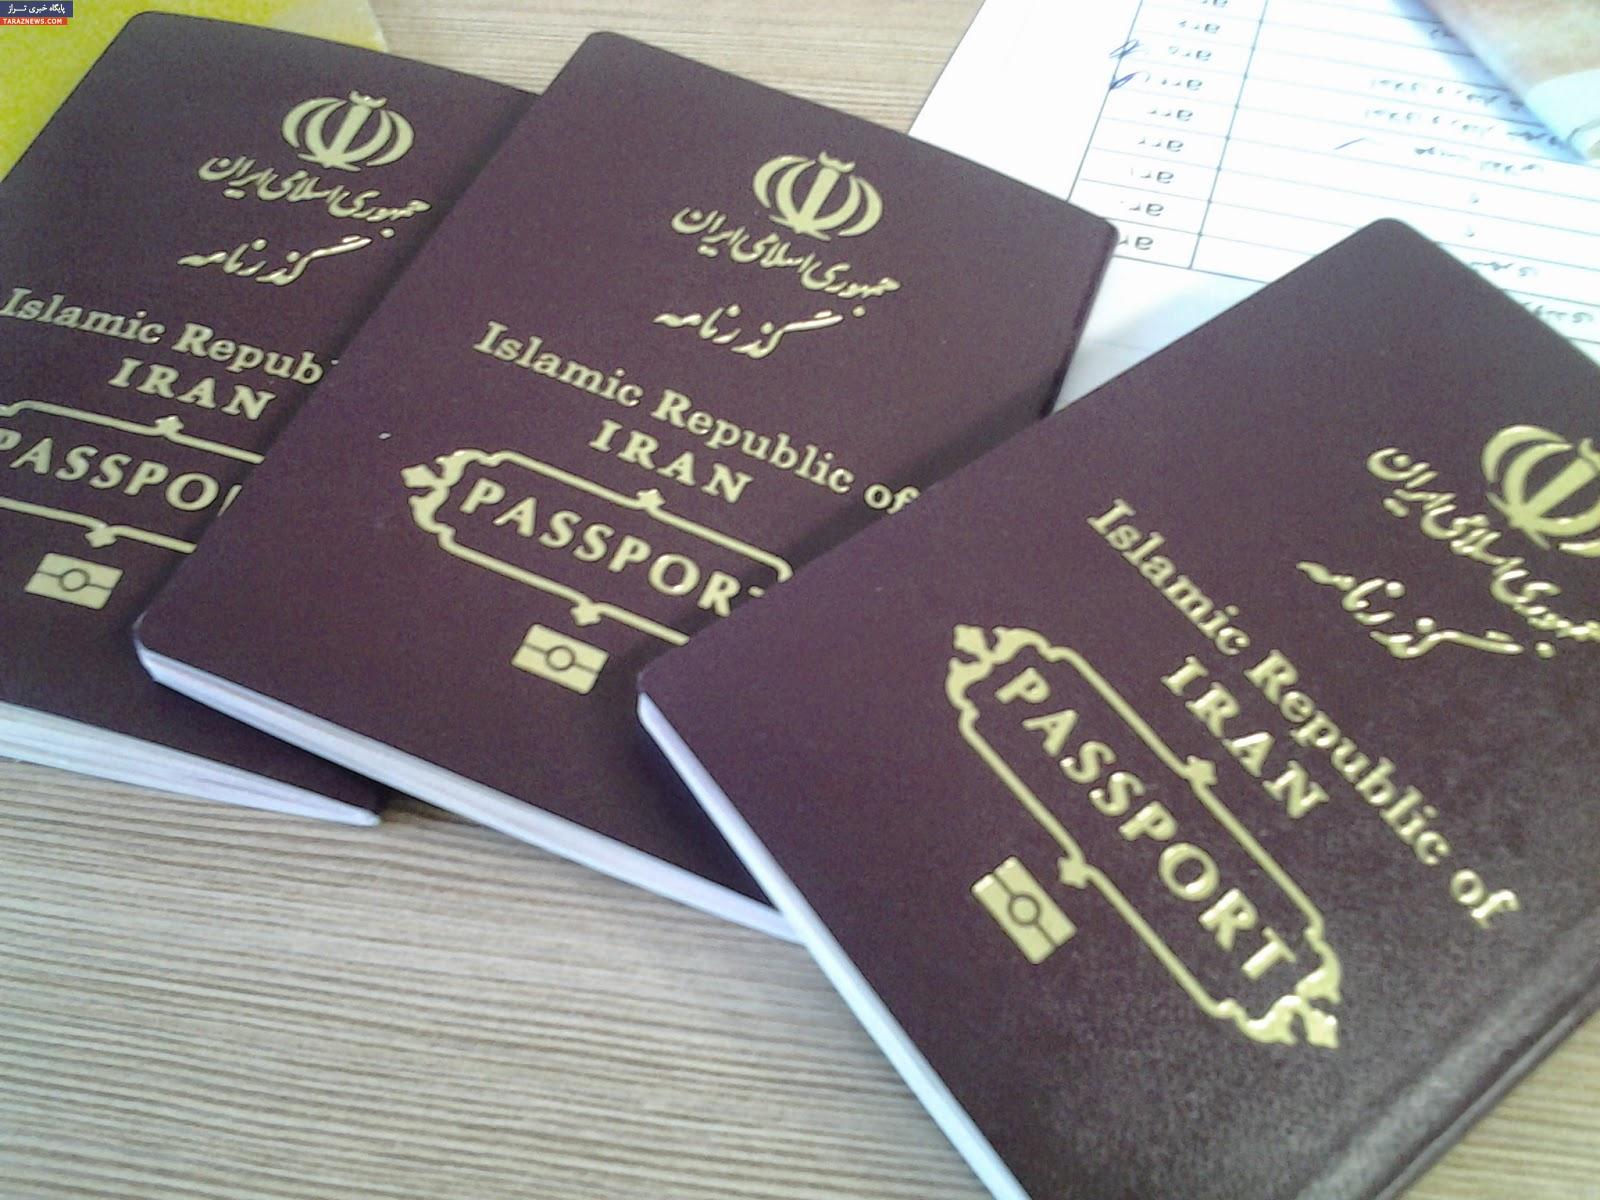 ایرانی‌ها دیگر نمی‌توانند بدون ویزا به مالزی سفر کنند